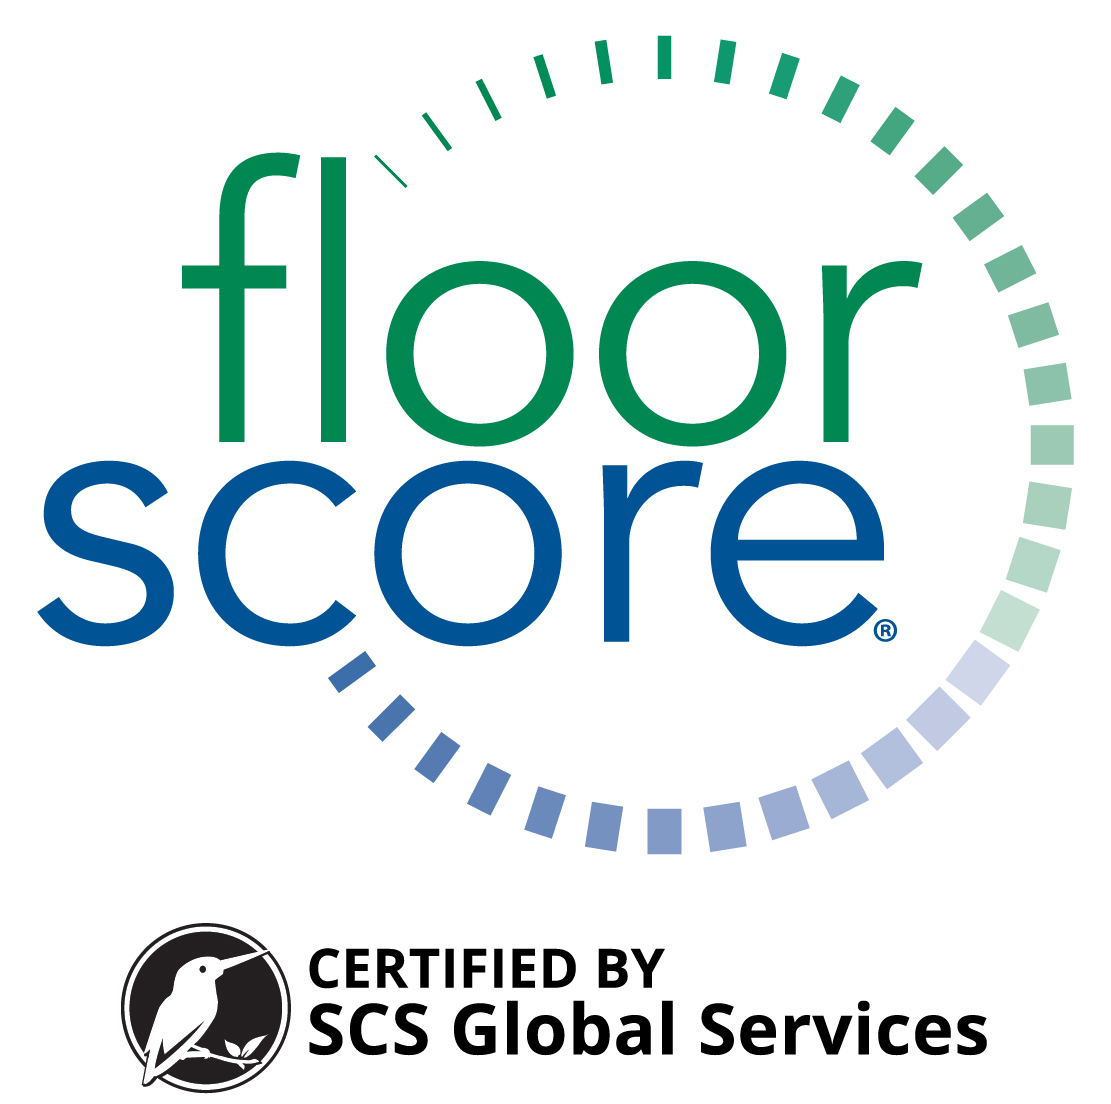 FloorScore Certified